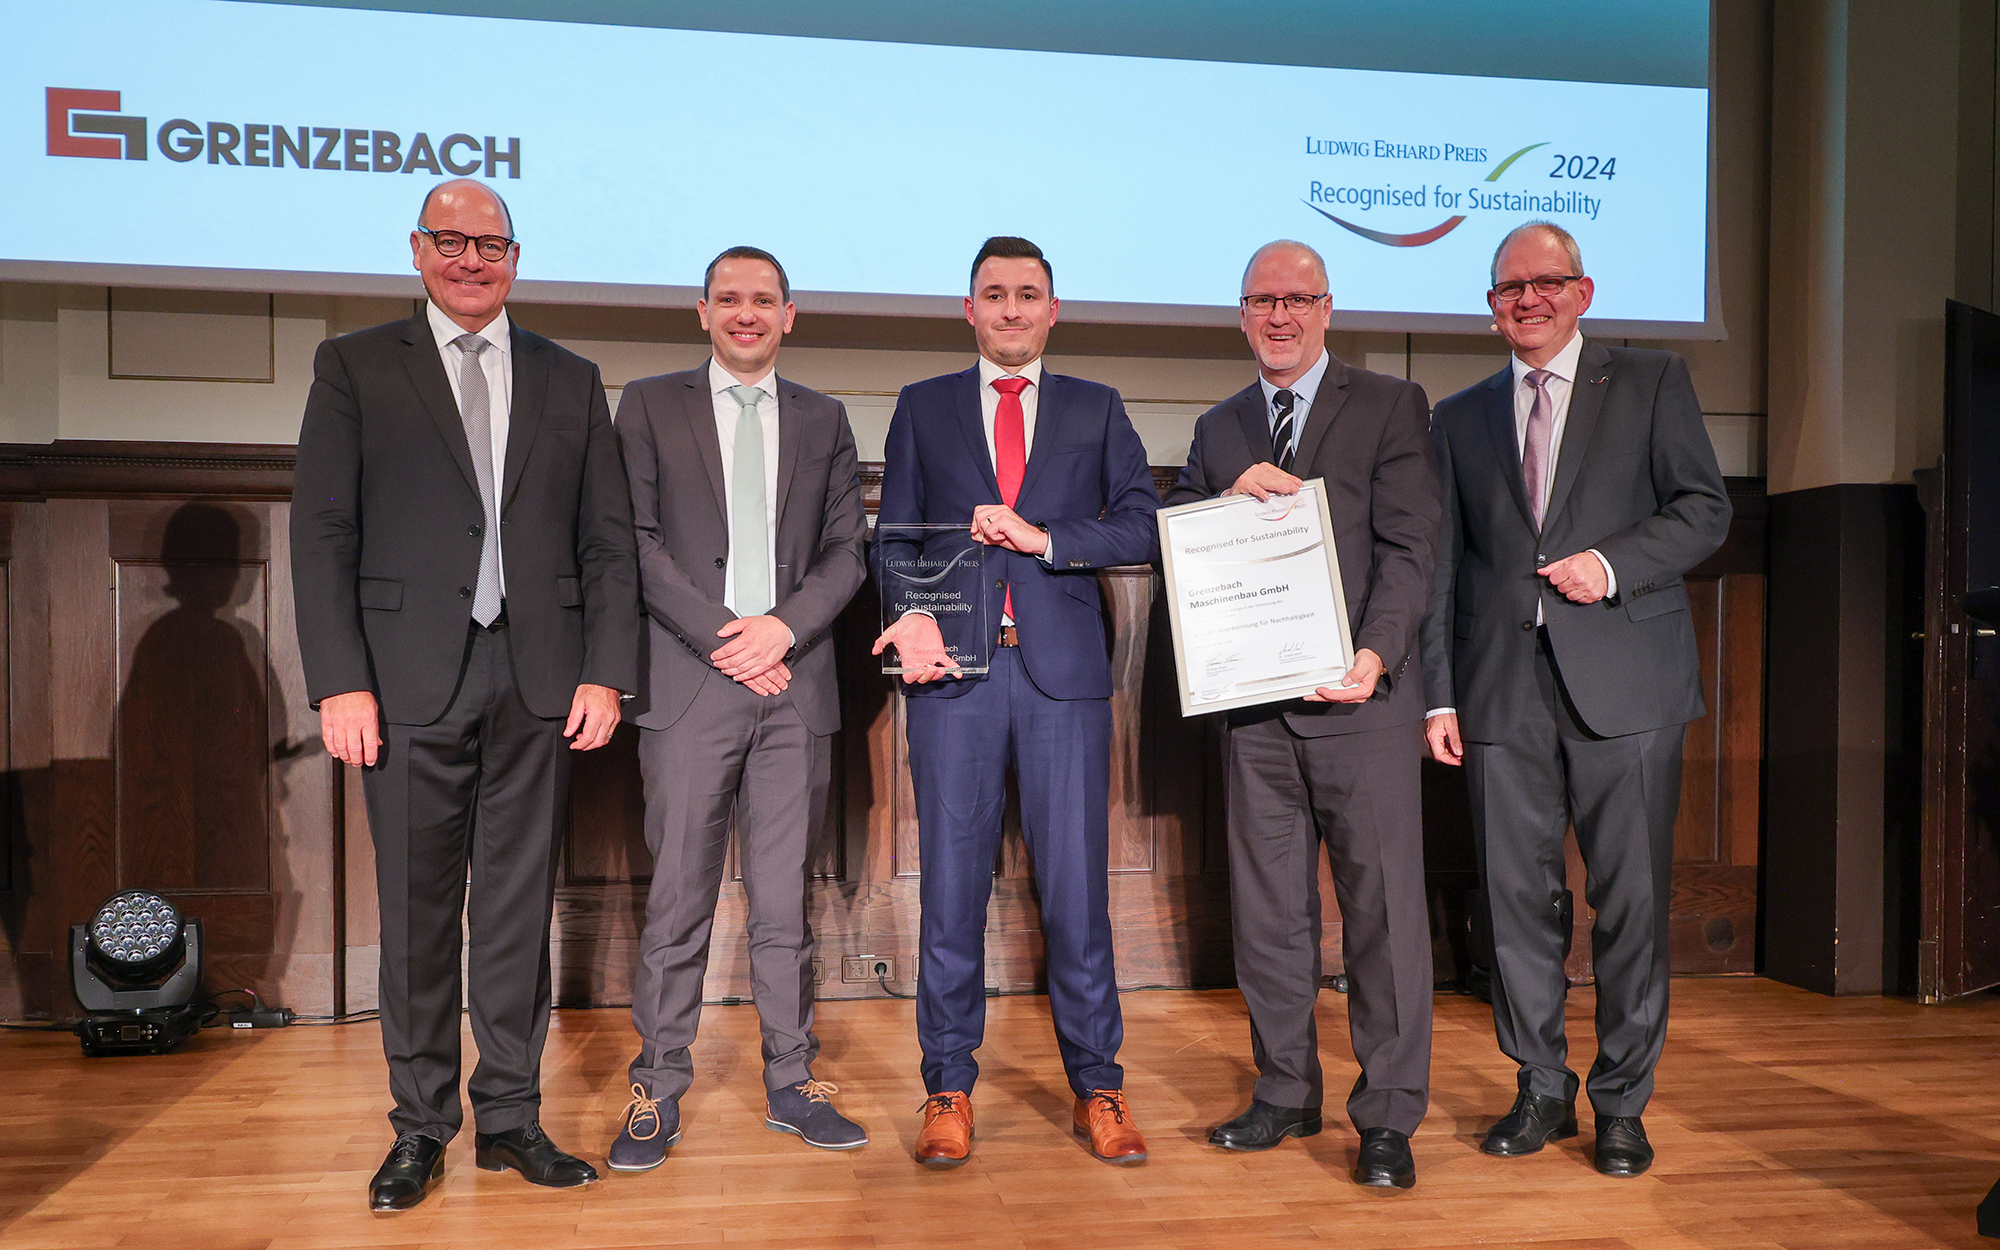 Grenzebach was awarded ILEP prize